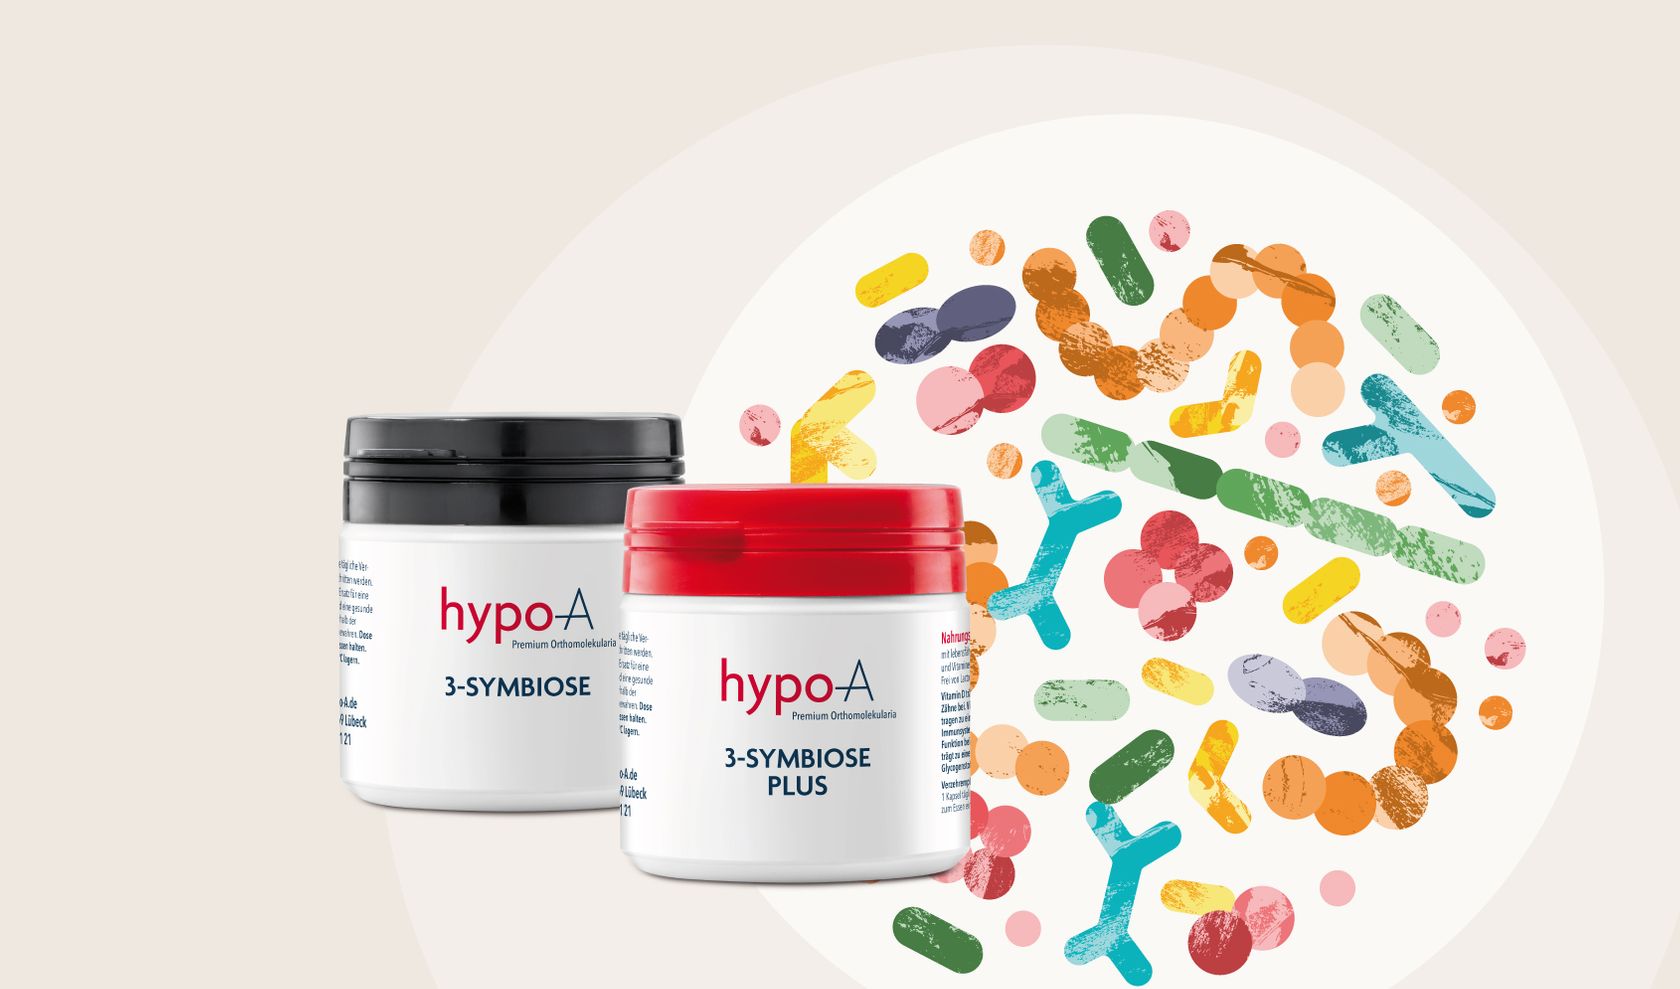 Verpackung der hypo-A Darmpflegeprodukte hypo-A 3-Symbiose und hypo-A 3-Symbiose plus.